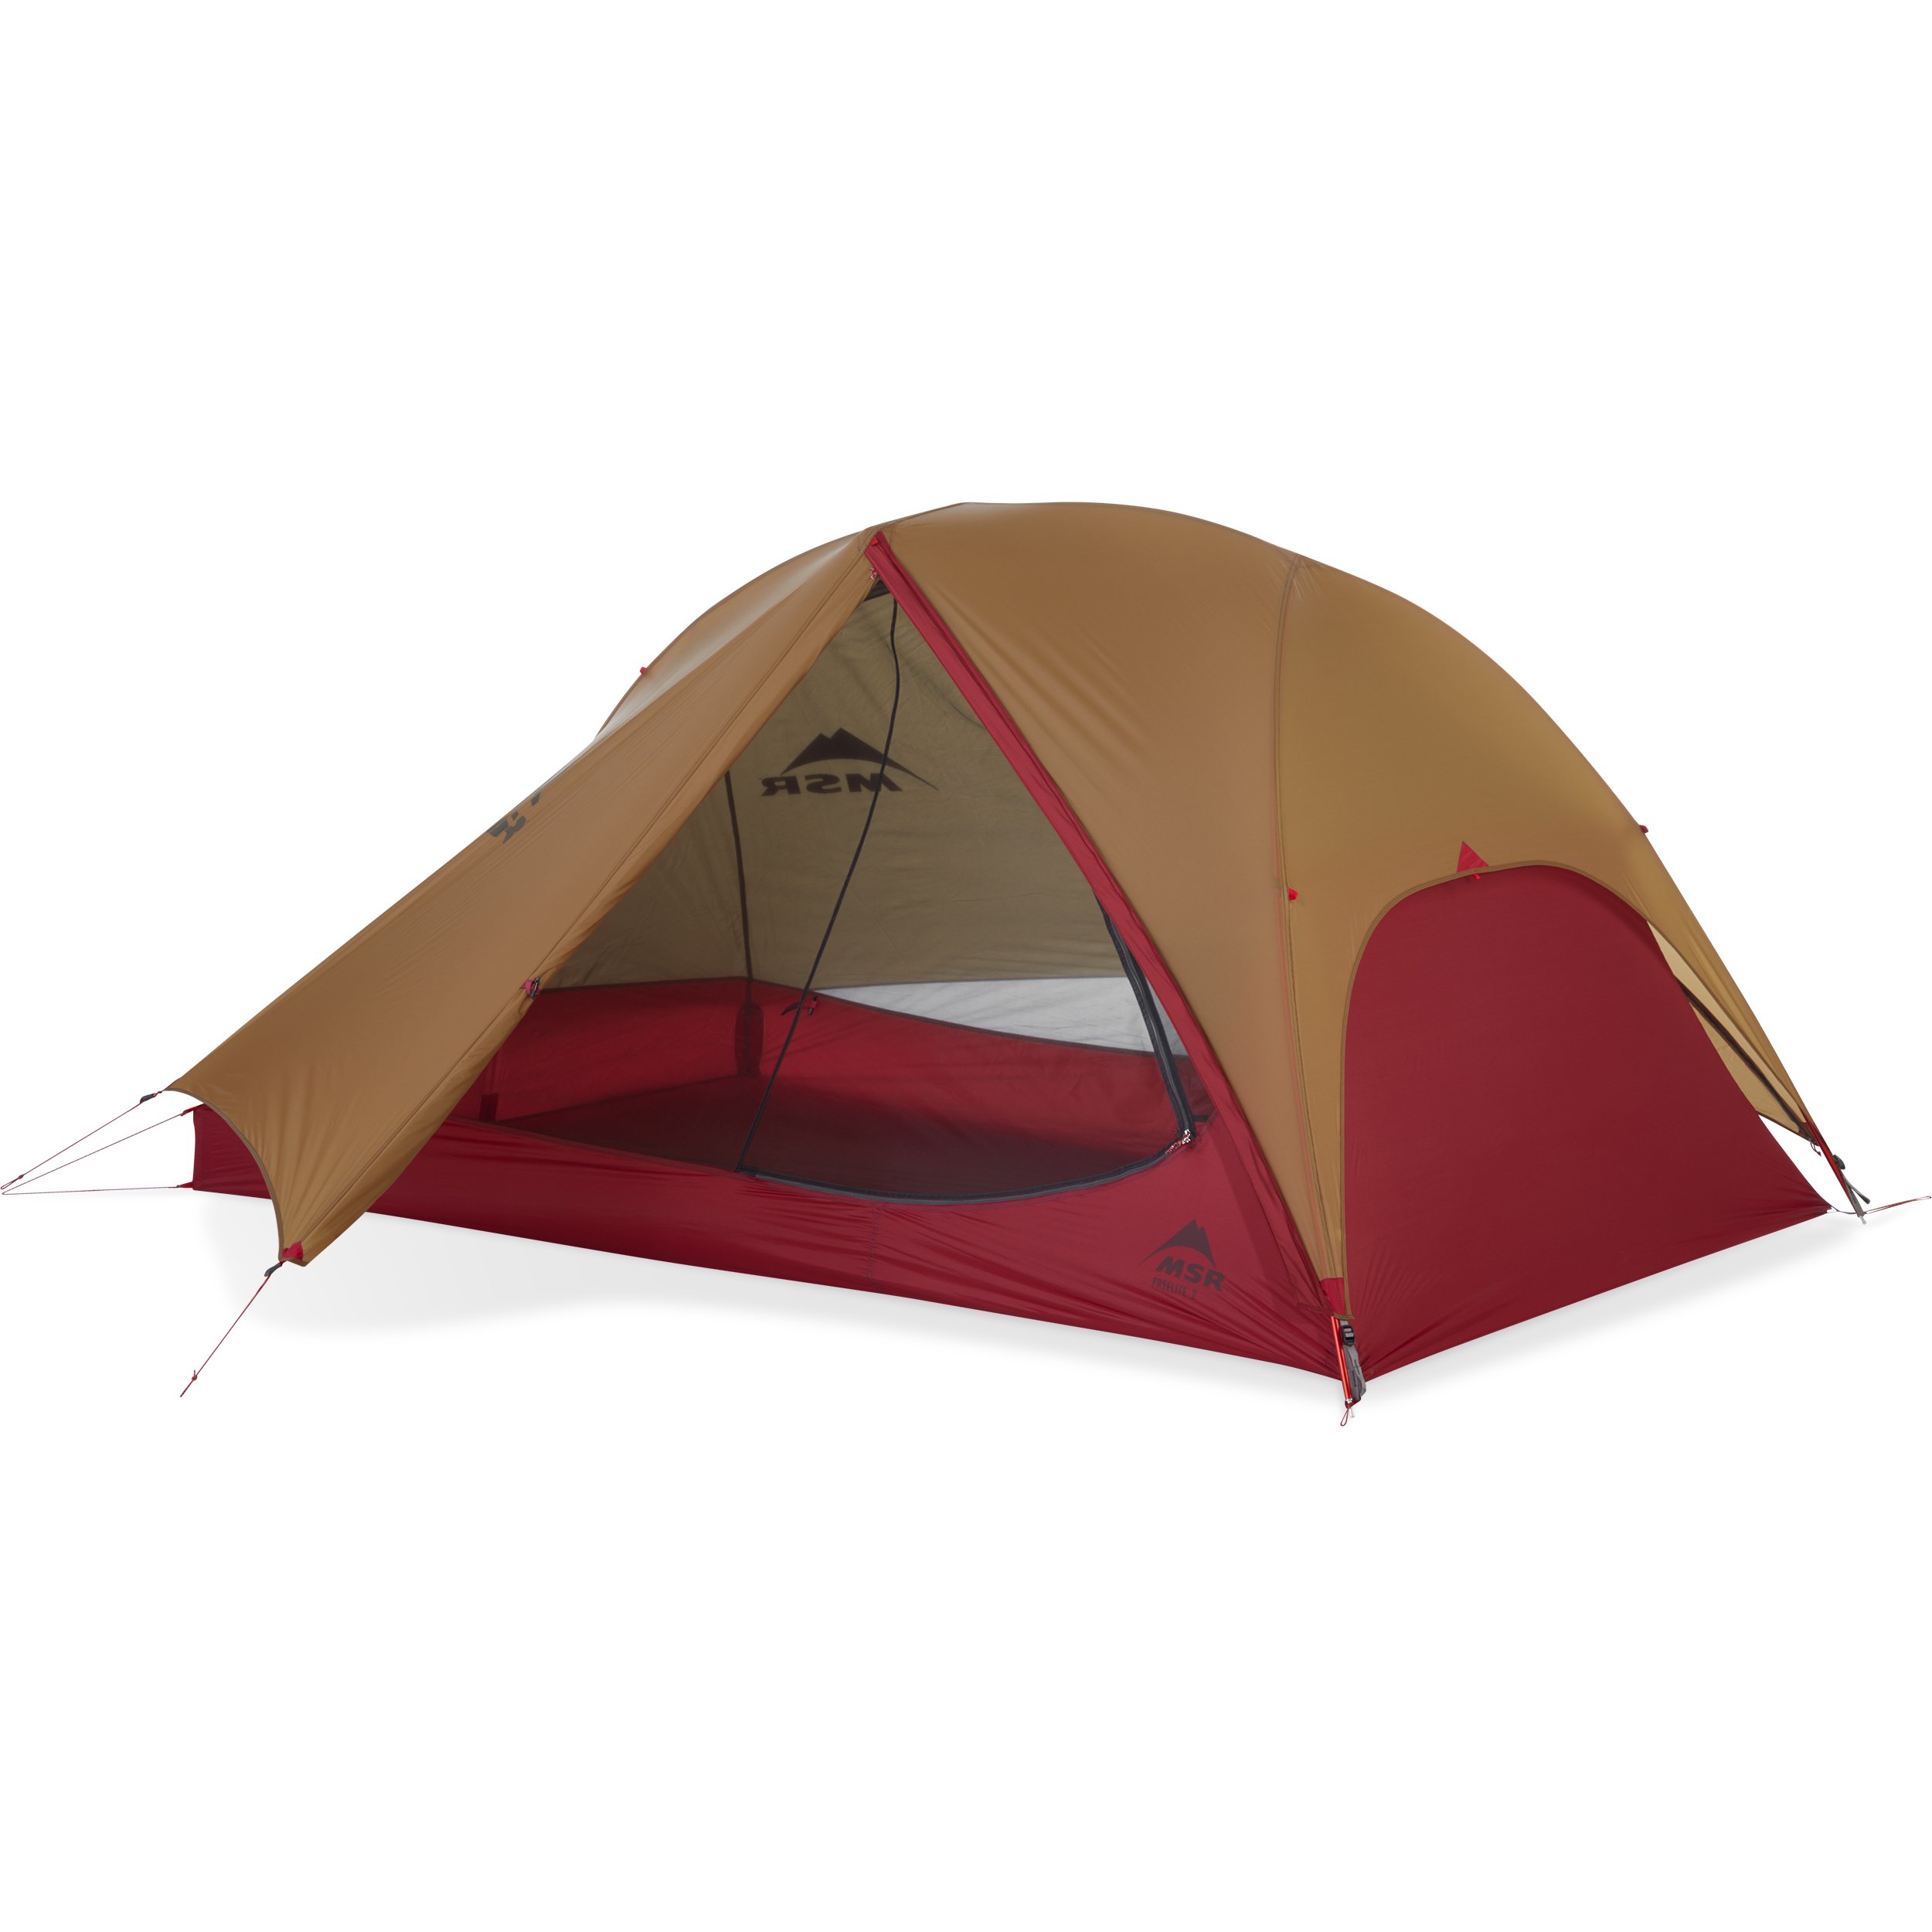 onstabiel Tutor Tussendoortje FreeLite™ 2 Ultrlaight 2-Person Backpacking Tent | MSR®